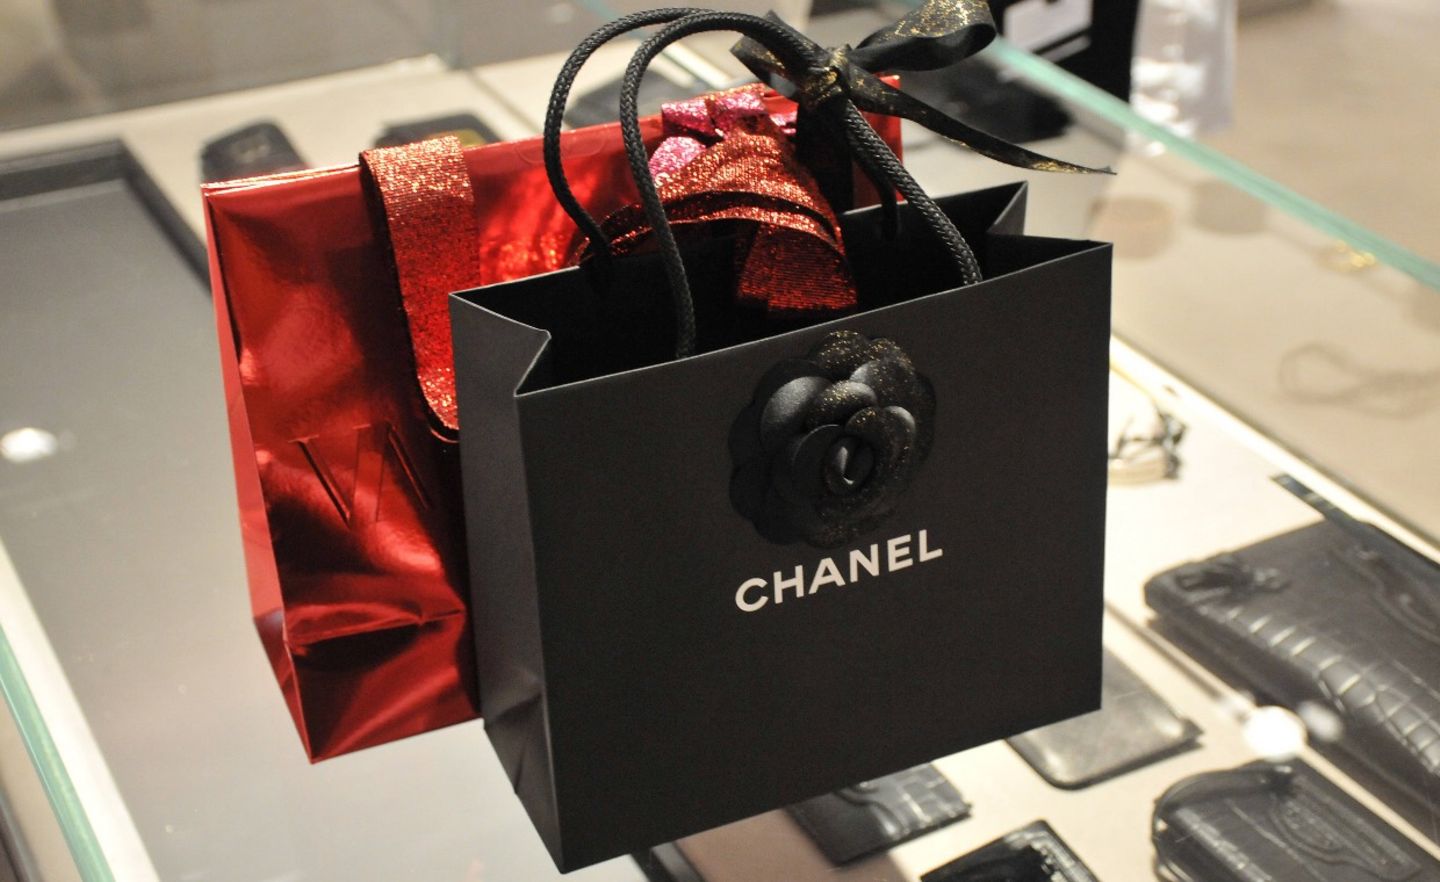 Chanel schien während der Pandemie einen Boom sondergleichen zu erleben. Das Modehaus hatte als eines der ersten sehr früh kräftig seine Preise erhöht. Rasend schnell ausverkaufte Kollektionen erweckten den Anschein, dass die Geschäfte blendend laufen. Allerdings war Chanel laut Interbrand der Verlierer des Luxusjahres 2021. Die Experten wiesen nur ein Plus von vier Prozent aus, der niedrigste Wert unter den Luxusmarken. Chanel fiel mit einem Markenwert von 22,1 Milliarden Dollar einen Platz auf Rang 23 und lag damit nur noch 500 Millionen Dollar vor Hermès. Ein Zustand mit Symbolwert: Nach vielen Preiserhöhungen innerhalb kürzester Zeit sind die teuersten Handtaschen von Chanel mittlerweile im Preisbereich der handgefertigten Lederwaren von Hermès angelegt – etwas, was vor einigen Jahren noch undenkbar schien. Viele Kundinnen tragen da ihr Geld lieber gleich zur Konkurrenz.